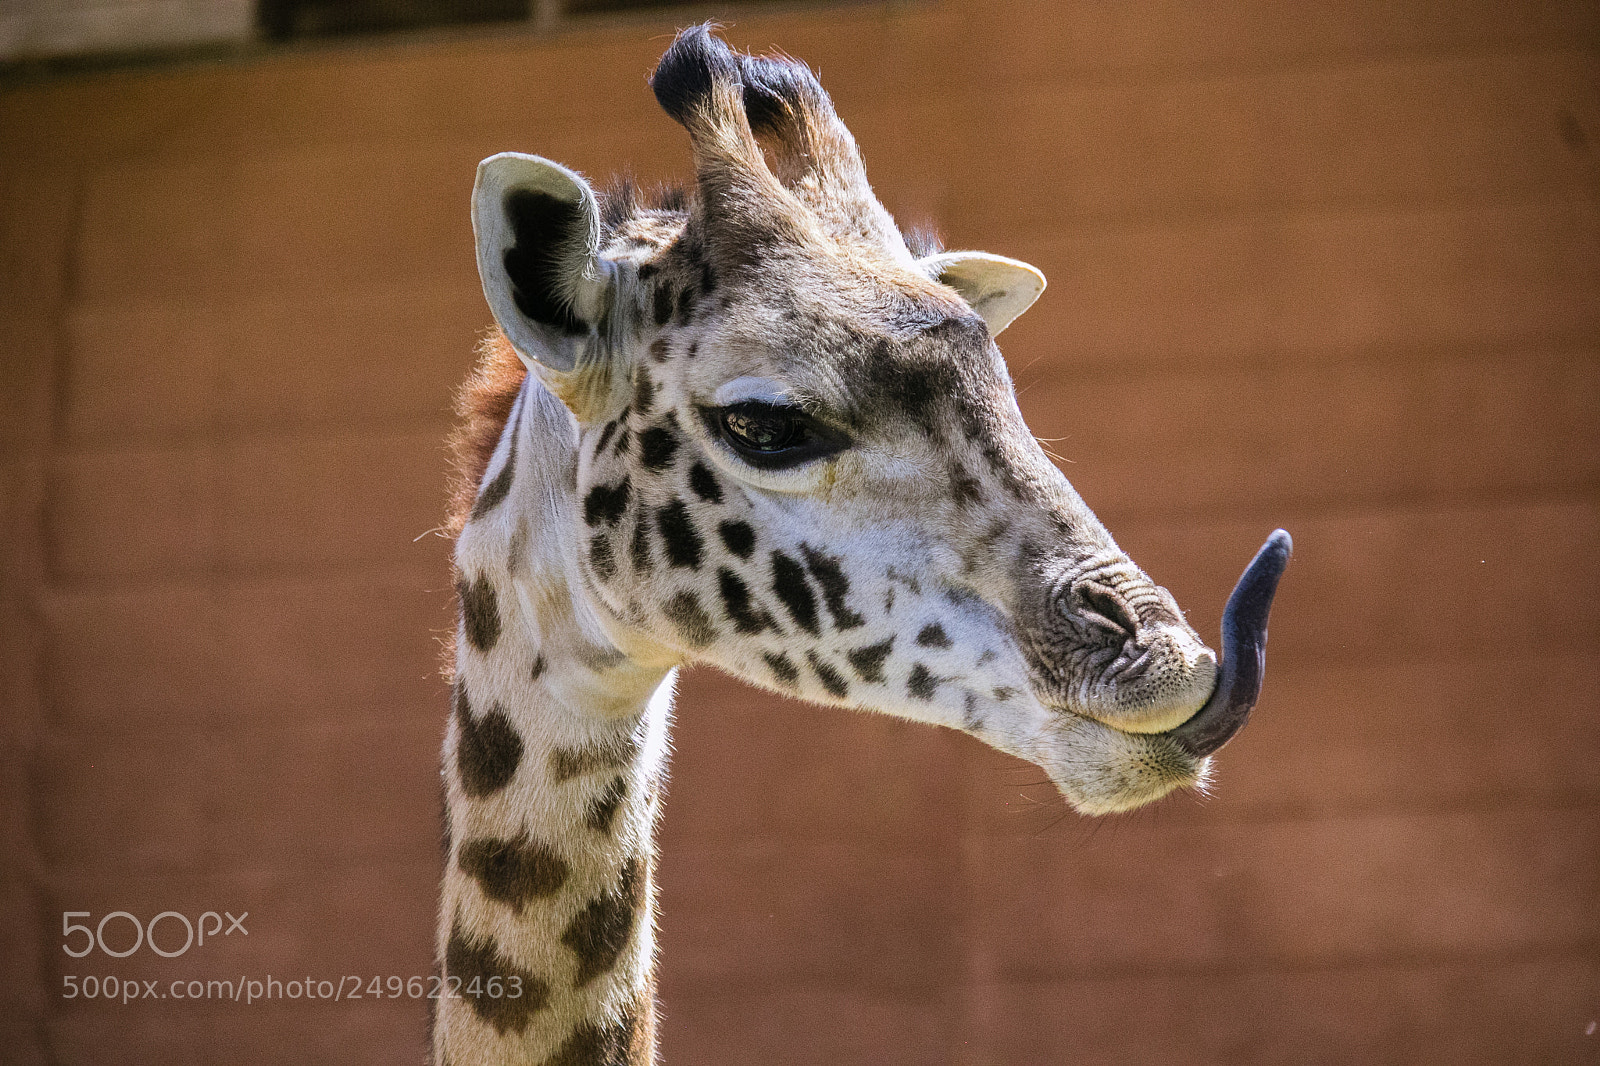 Canon EOS 60D sample photo. Giraffe tongue photography